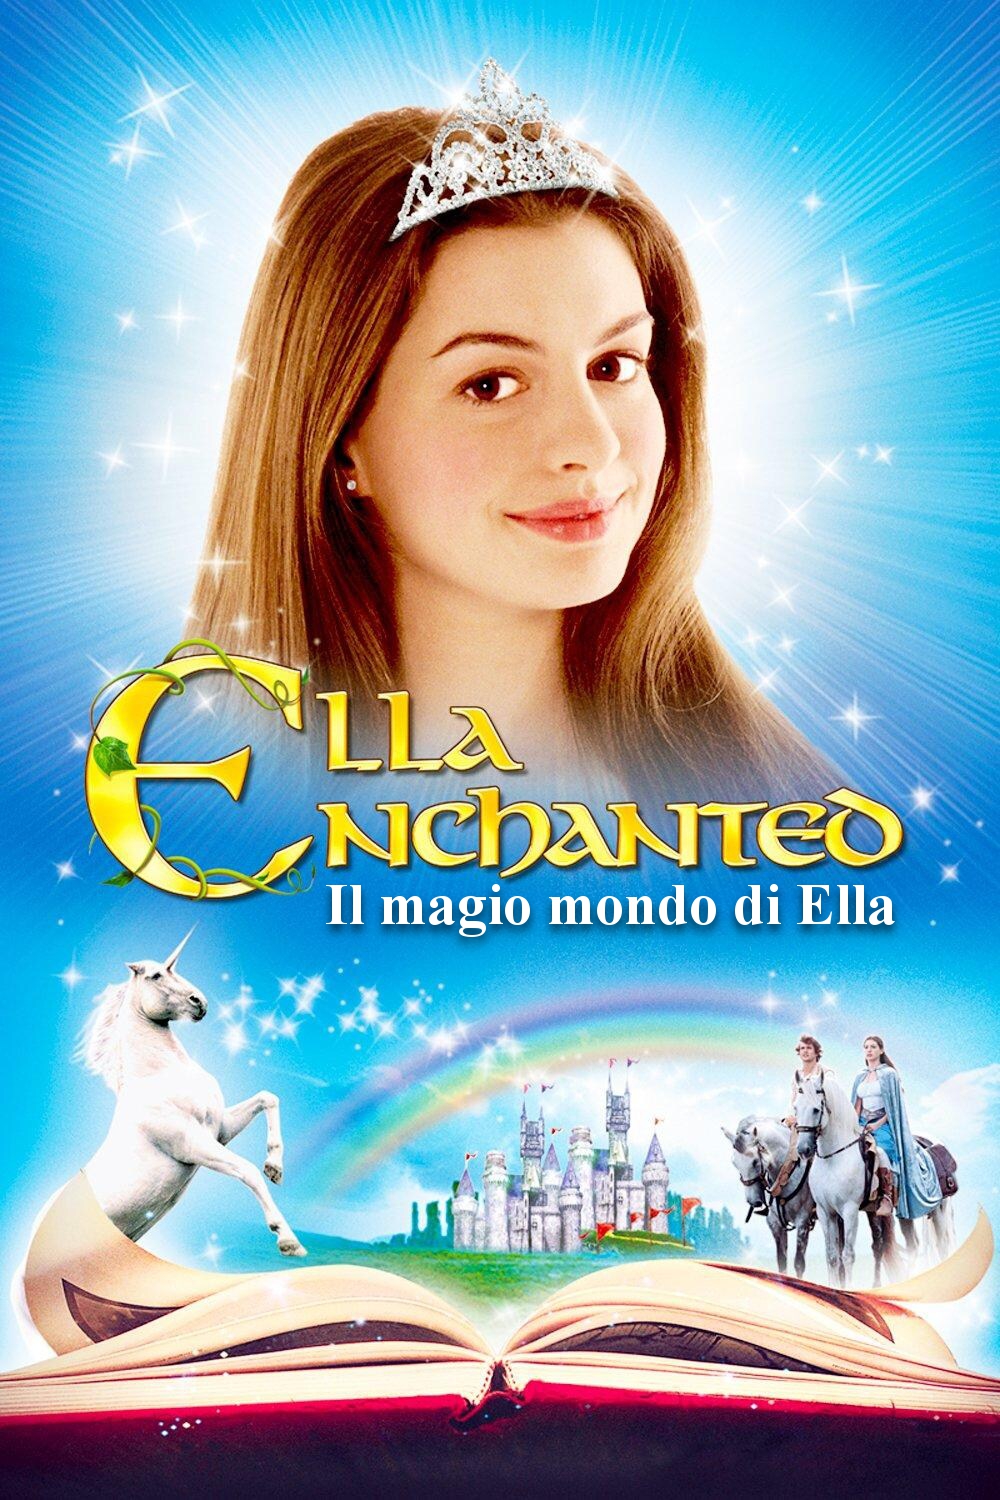 Ella Enchanted – Il magico mondo di Ella [HD] (2004)